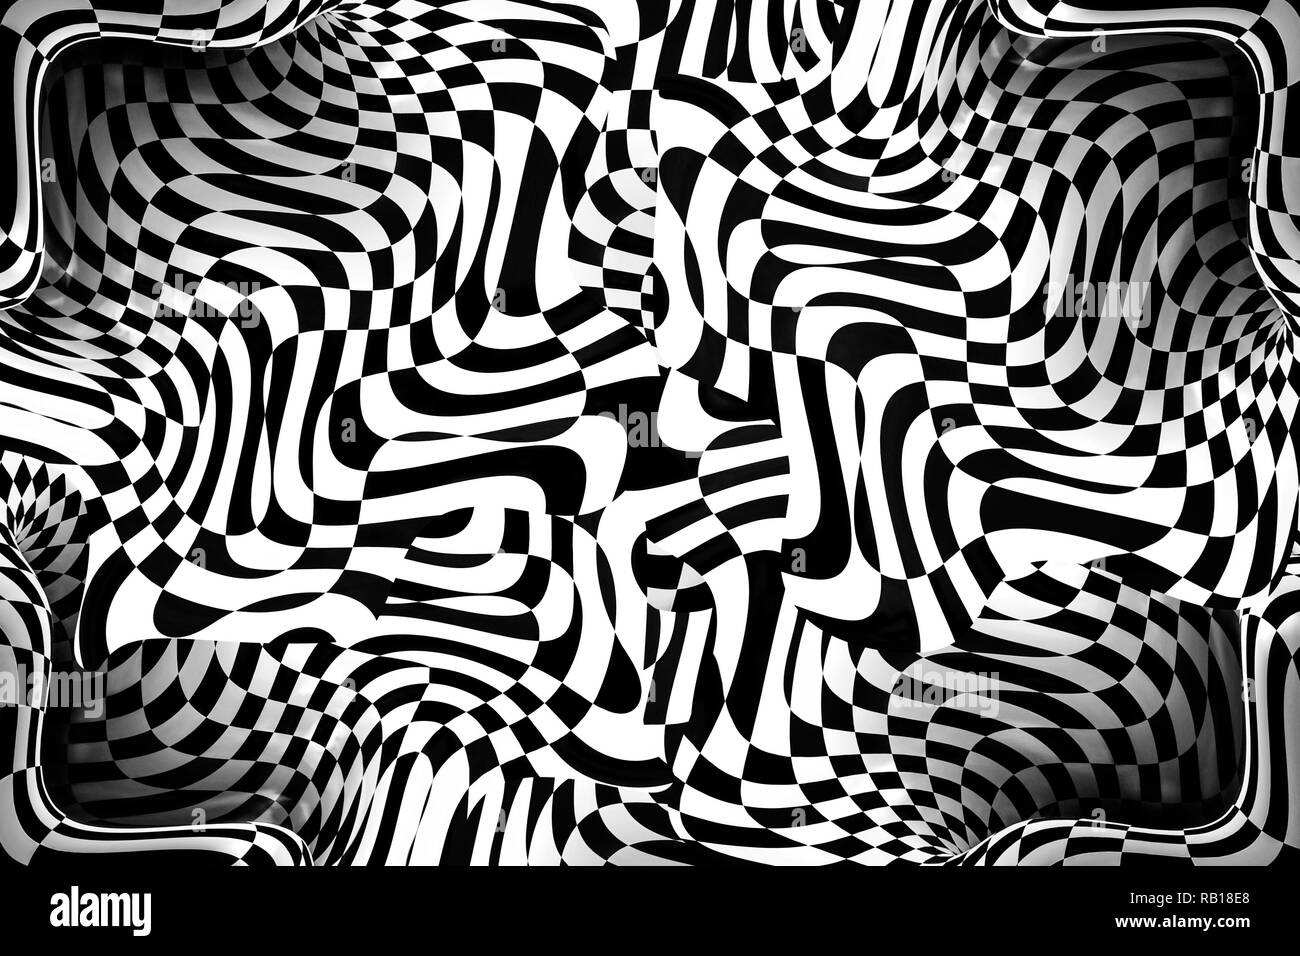 Résumé les courbes en noir et blanc image 3D. Banque D'Images